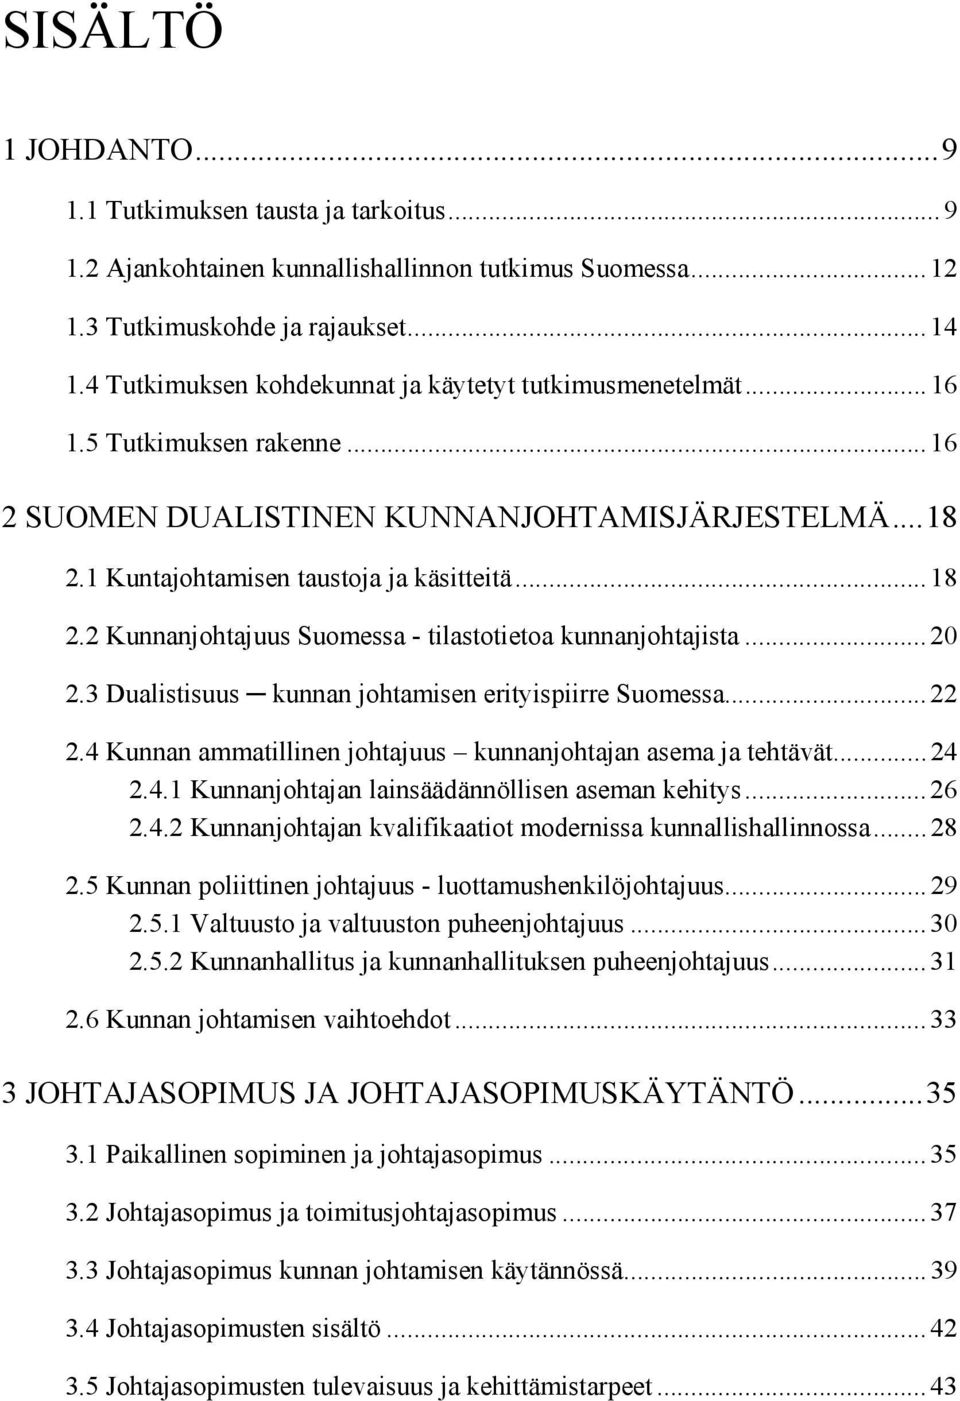 1 Kuntajohtamisen taustoja ja käsitteitä...18 2.2 Kunnanjohtajuus Suomessa - tilastotietoa kunnanjohtajista...20 2.3 Dualistisuus kunnan johtamisen erityispiirre Suomessa...22 2.